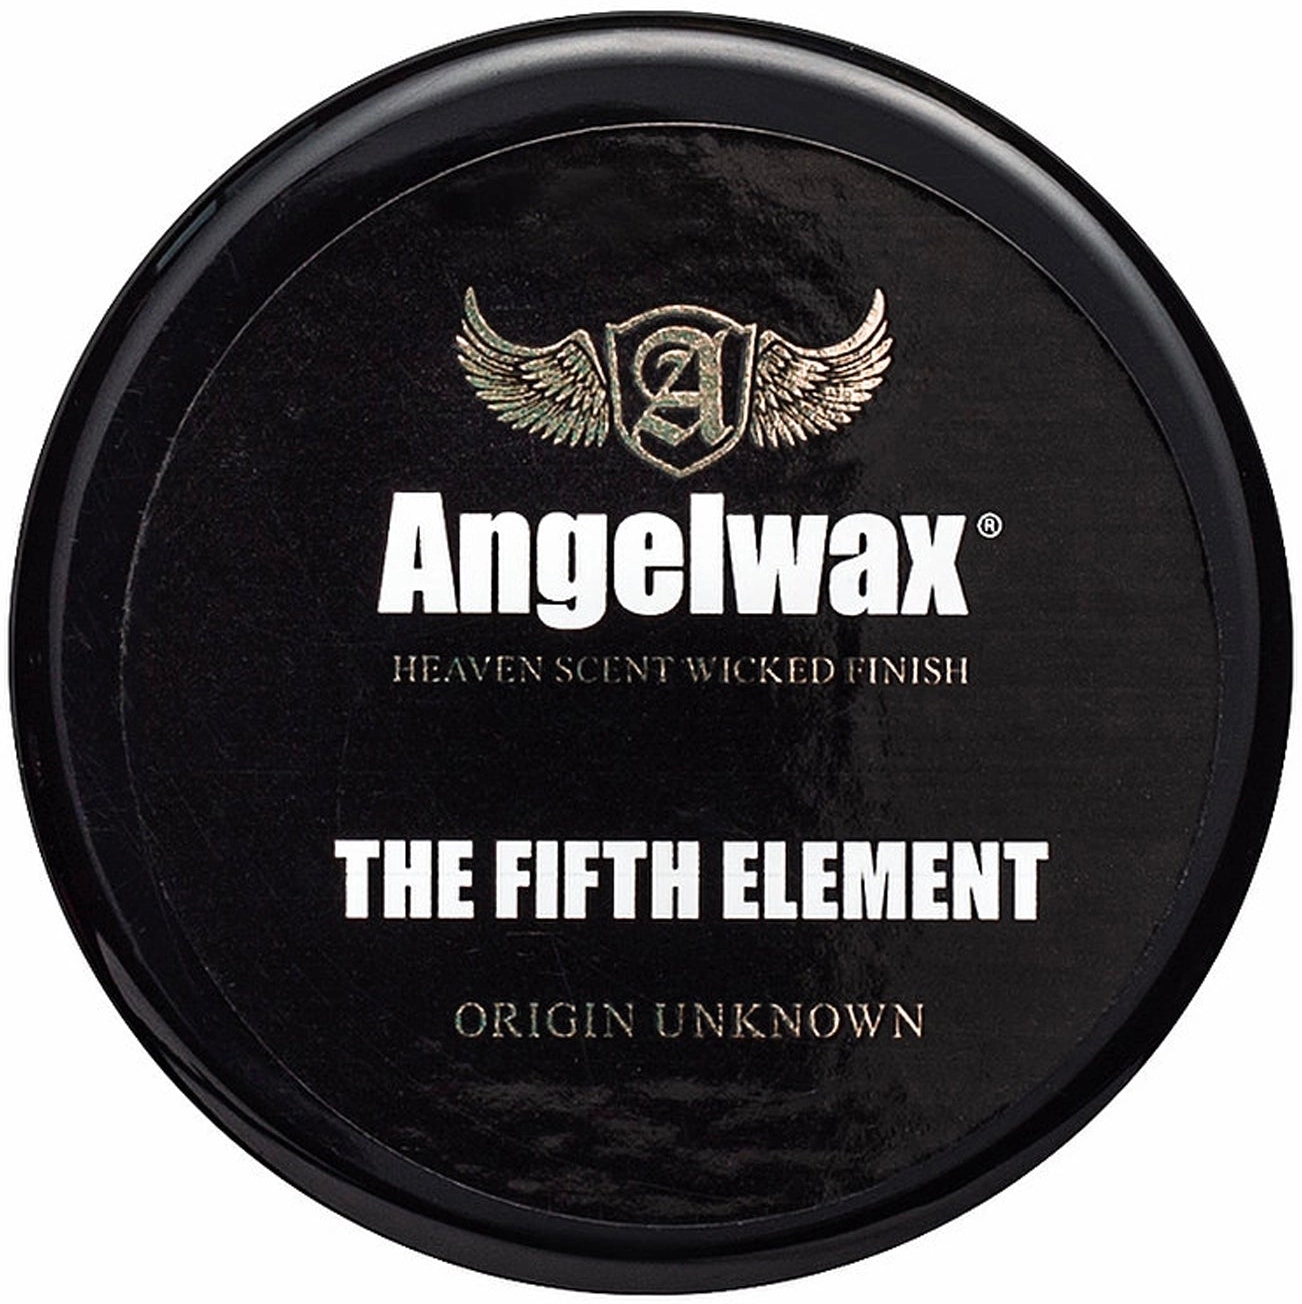 Image of Angelwax 5th Element - specjalistyczny wosk na powłoki ceramiczne kwarcowe 33ml